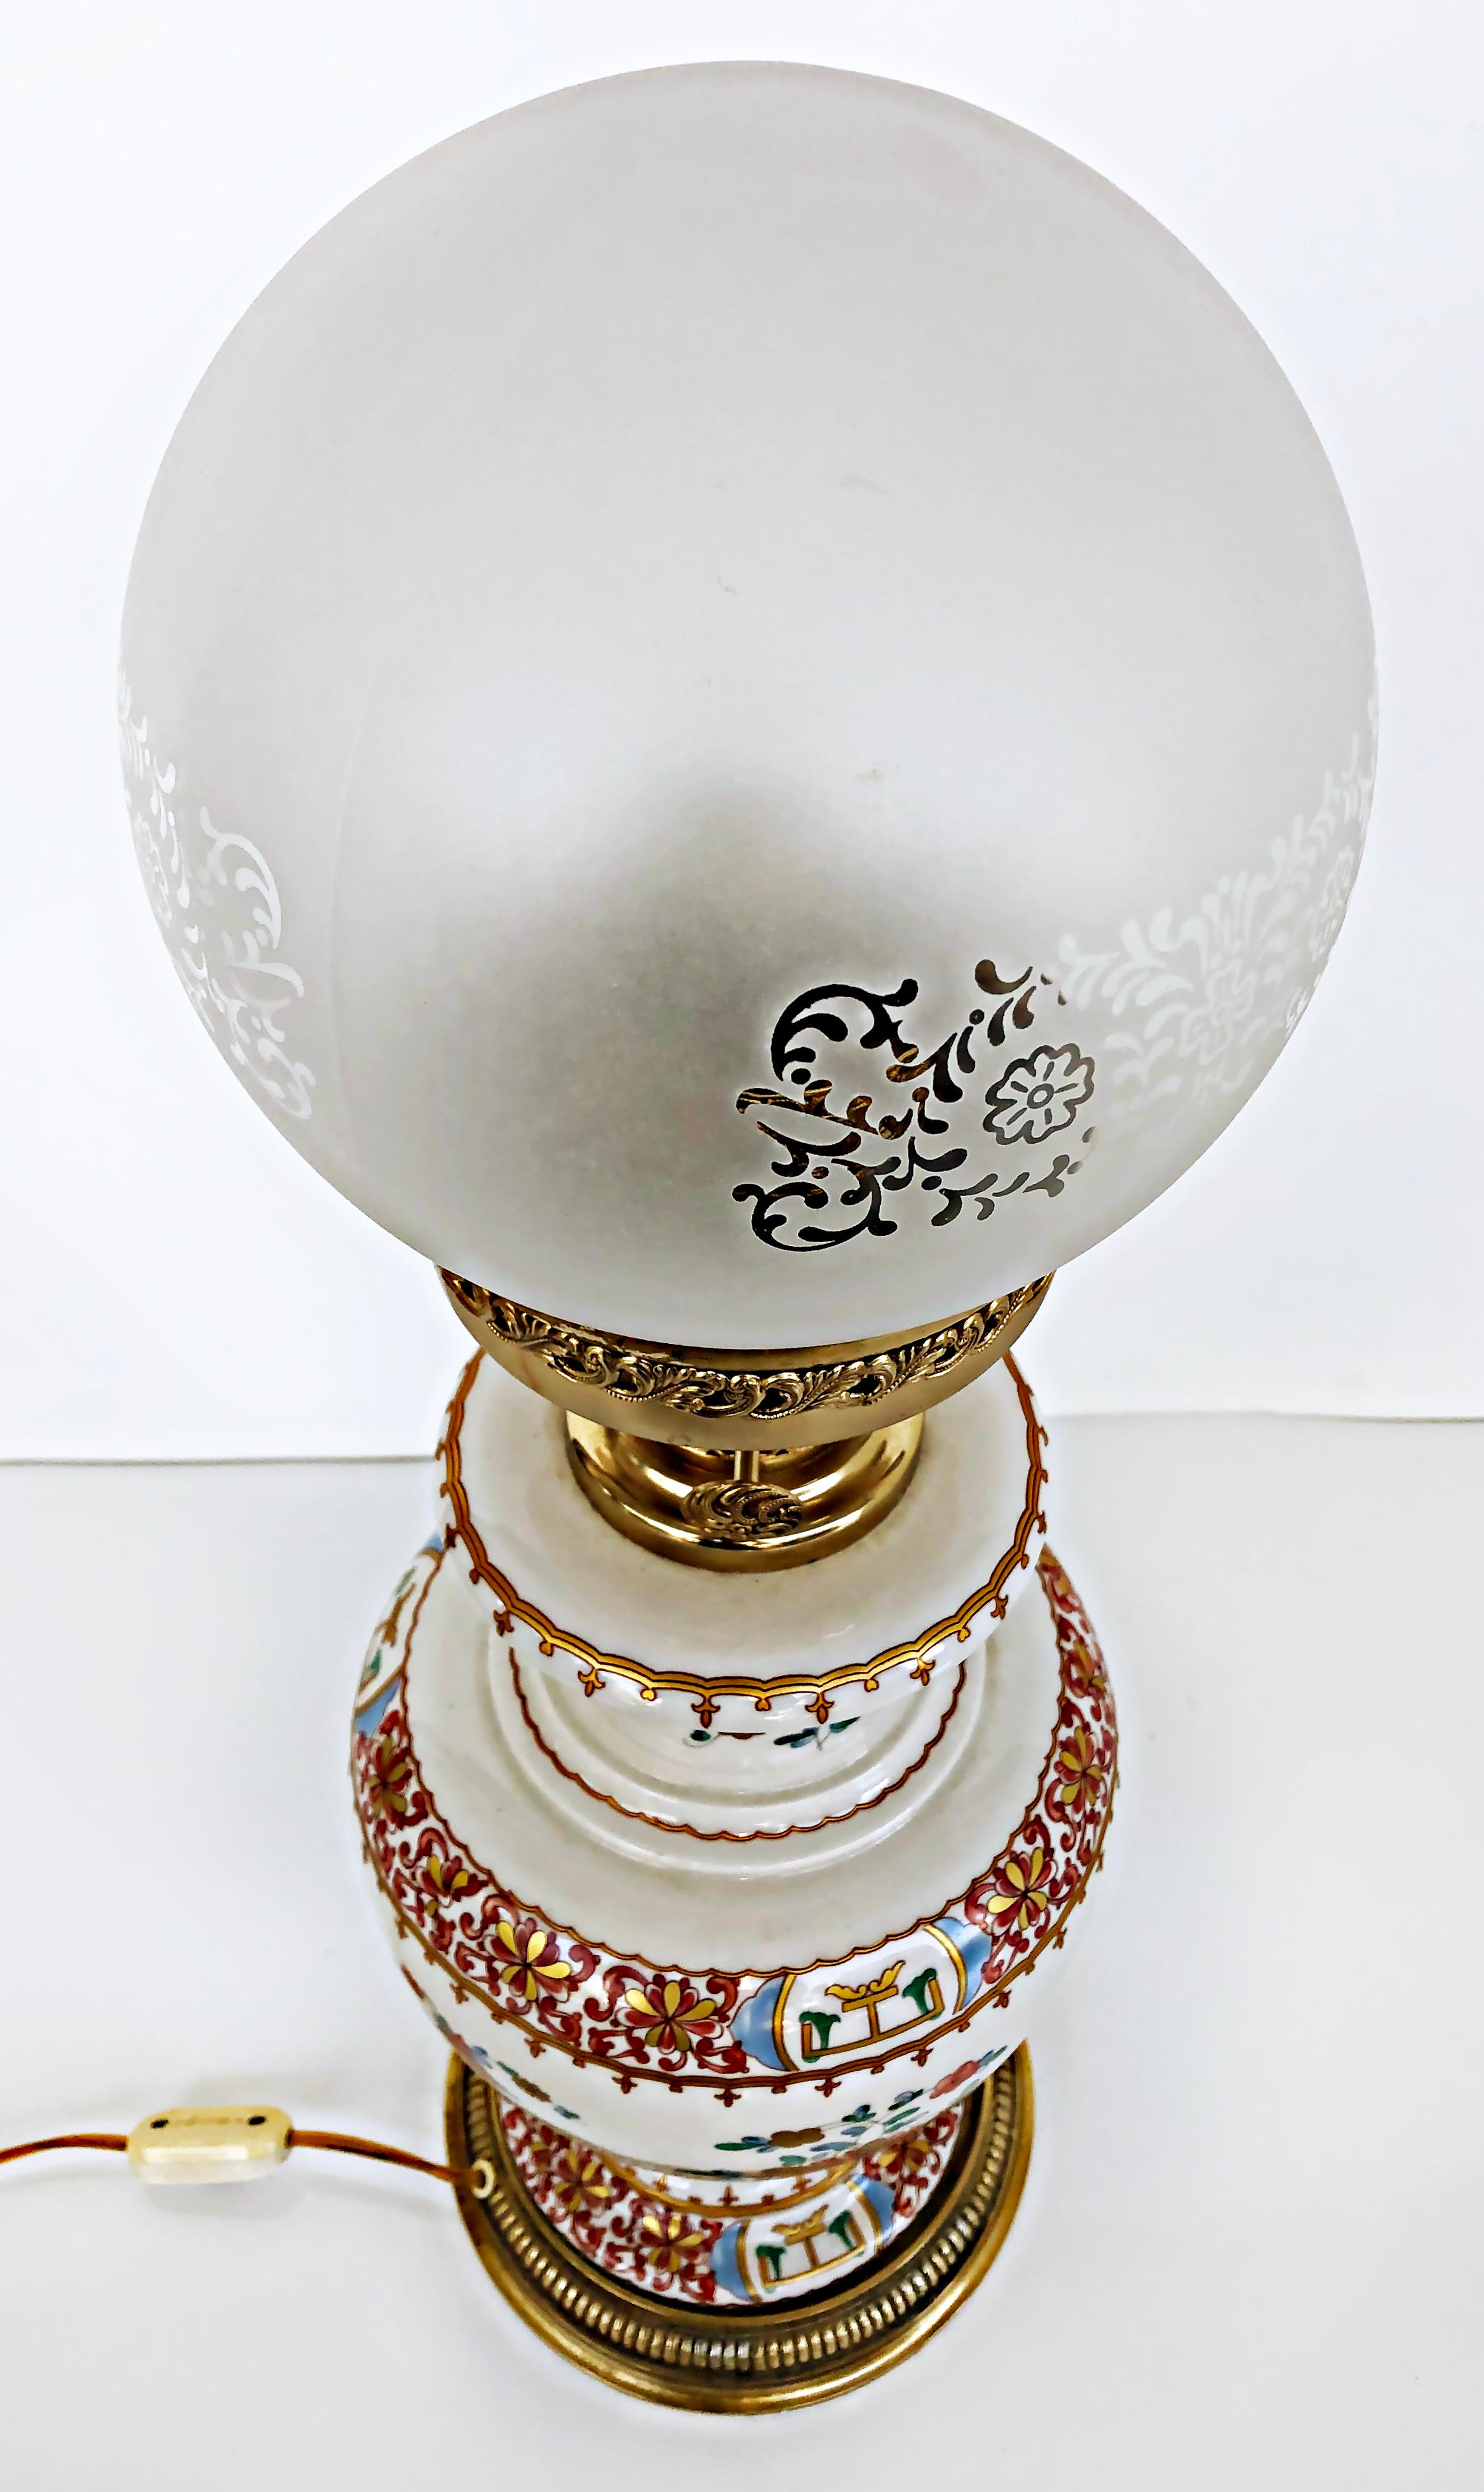 Lampe à huile italienne en porcelaine peinte à la main, électrifiée avec abat-jour en verre gravé

Nous proposons à la vente une lampe à huile en porcelaine italienne de la fin du 20e siècle, peinte à la main, avec un abat-jour en verre gravé. La